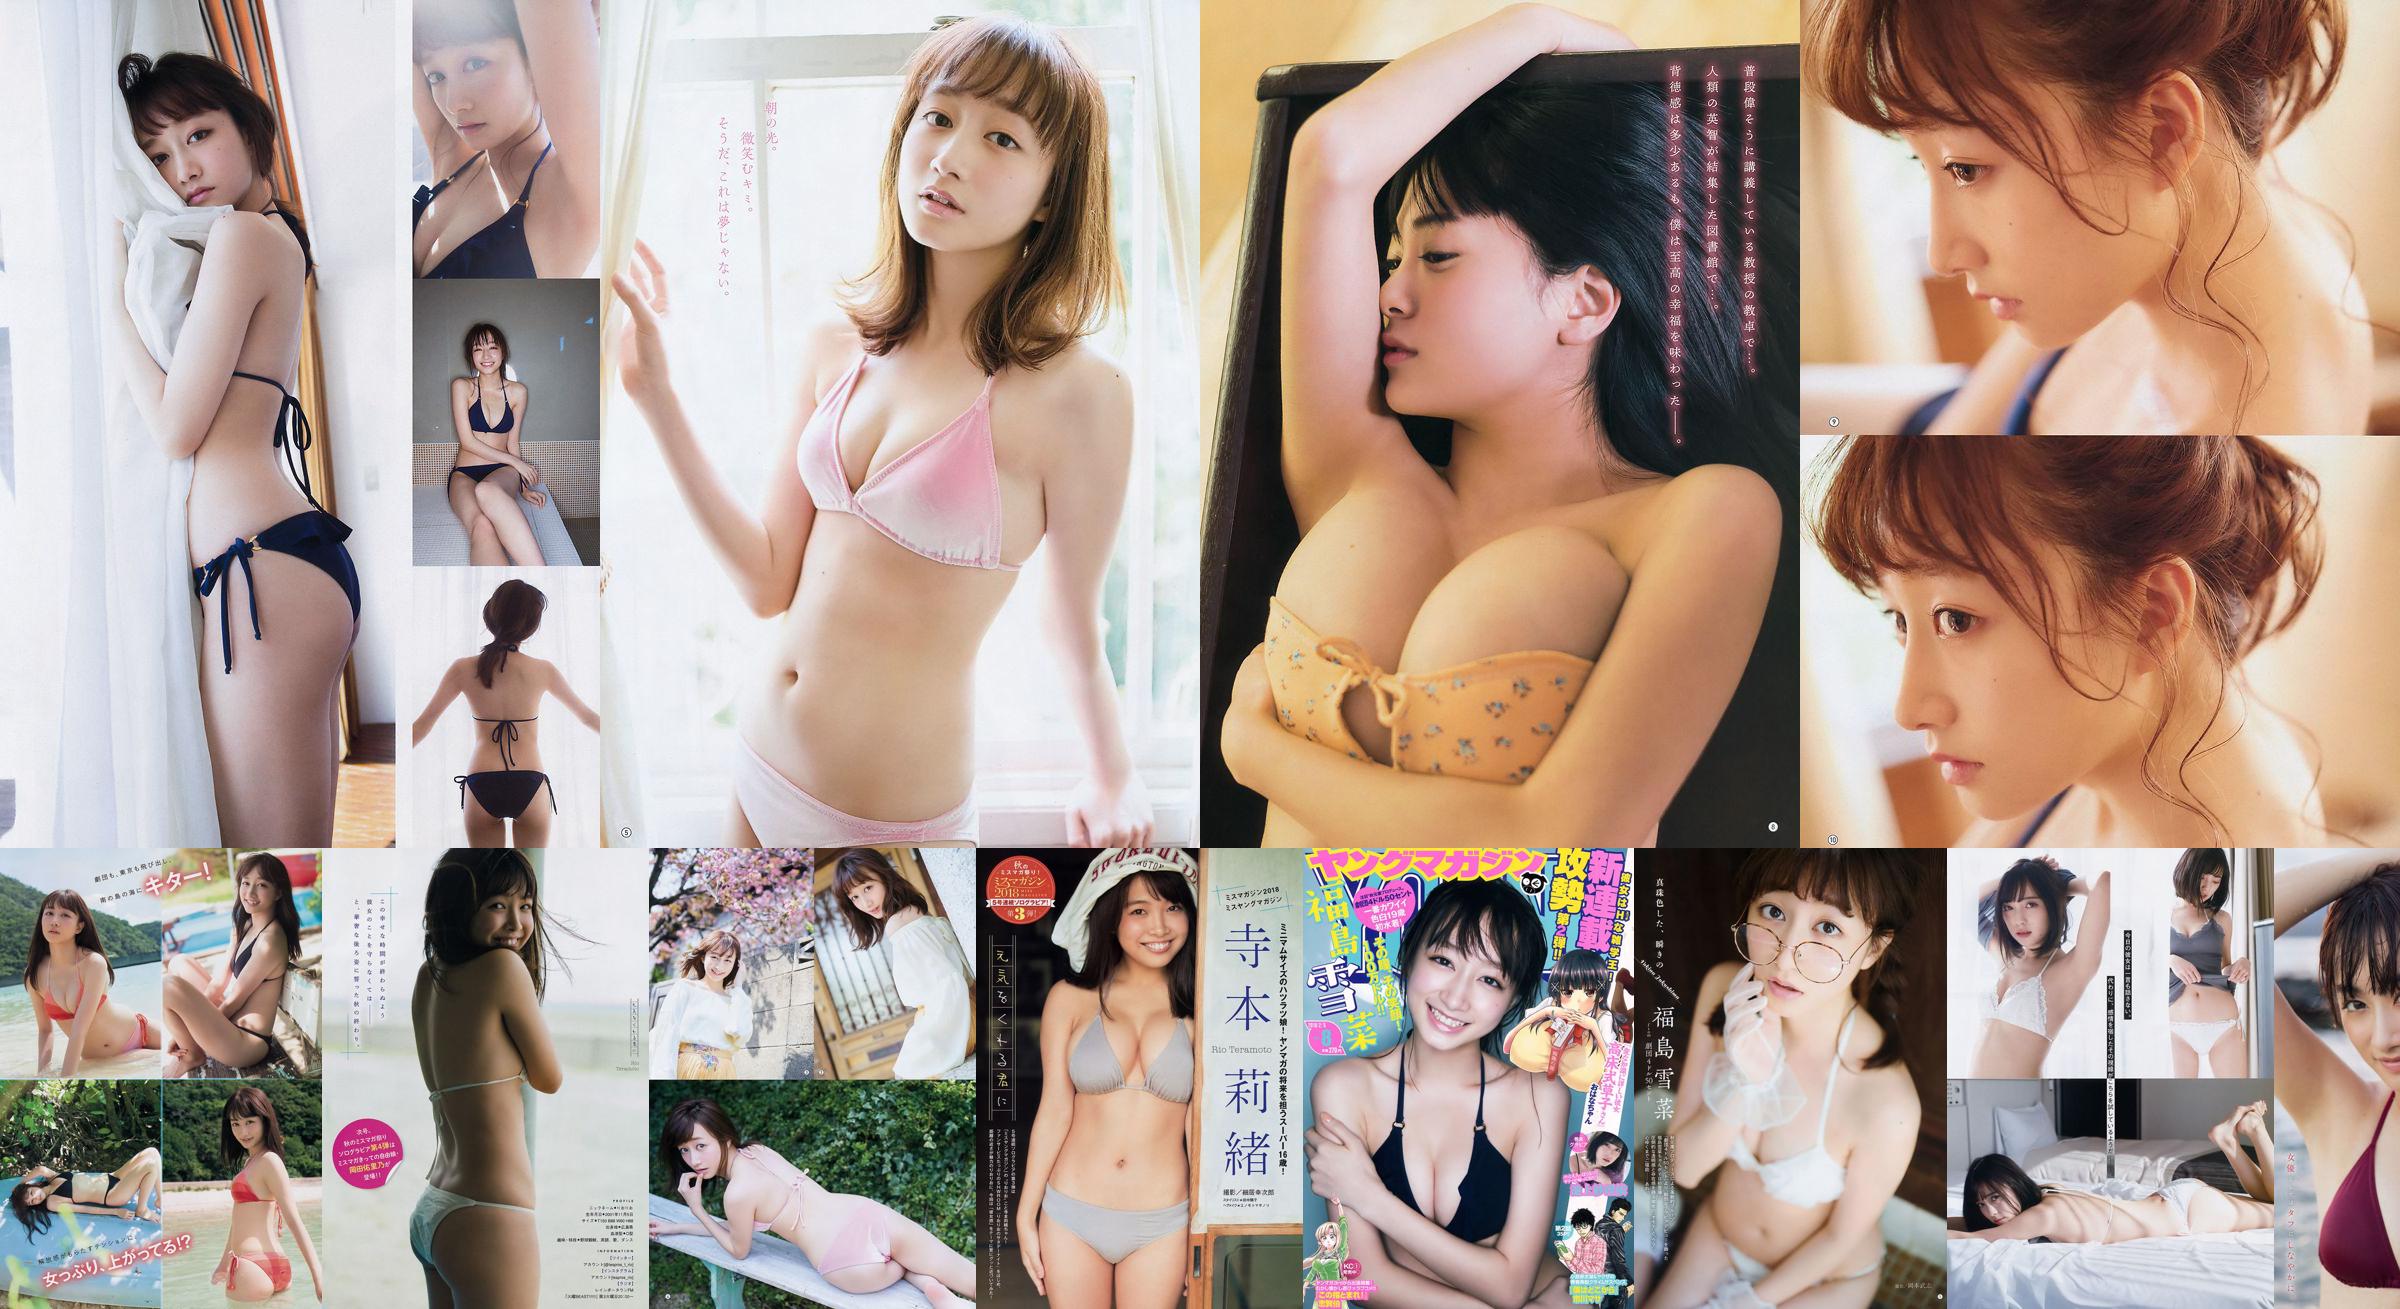 [FLASH] Yukina Fukushima Mariko Seyama Rina Asakawa Haruka 2018.11.20 Foto No.05dbf0 Seite 1